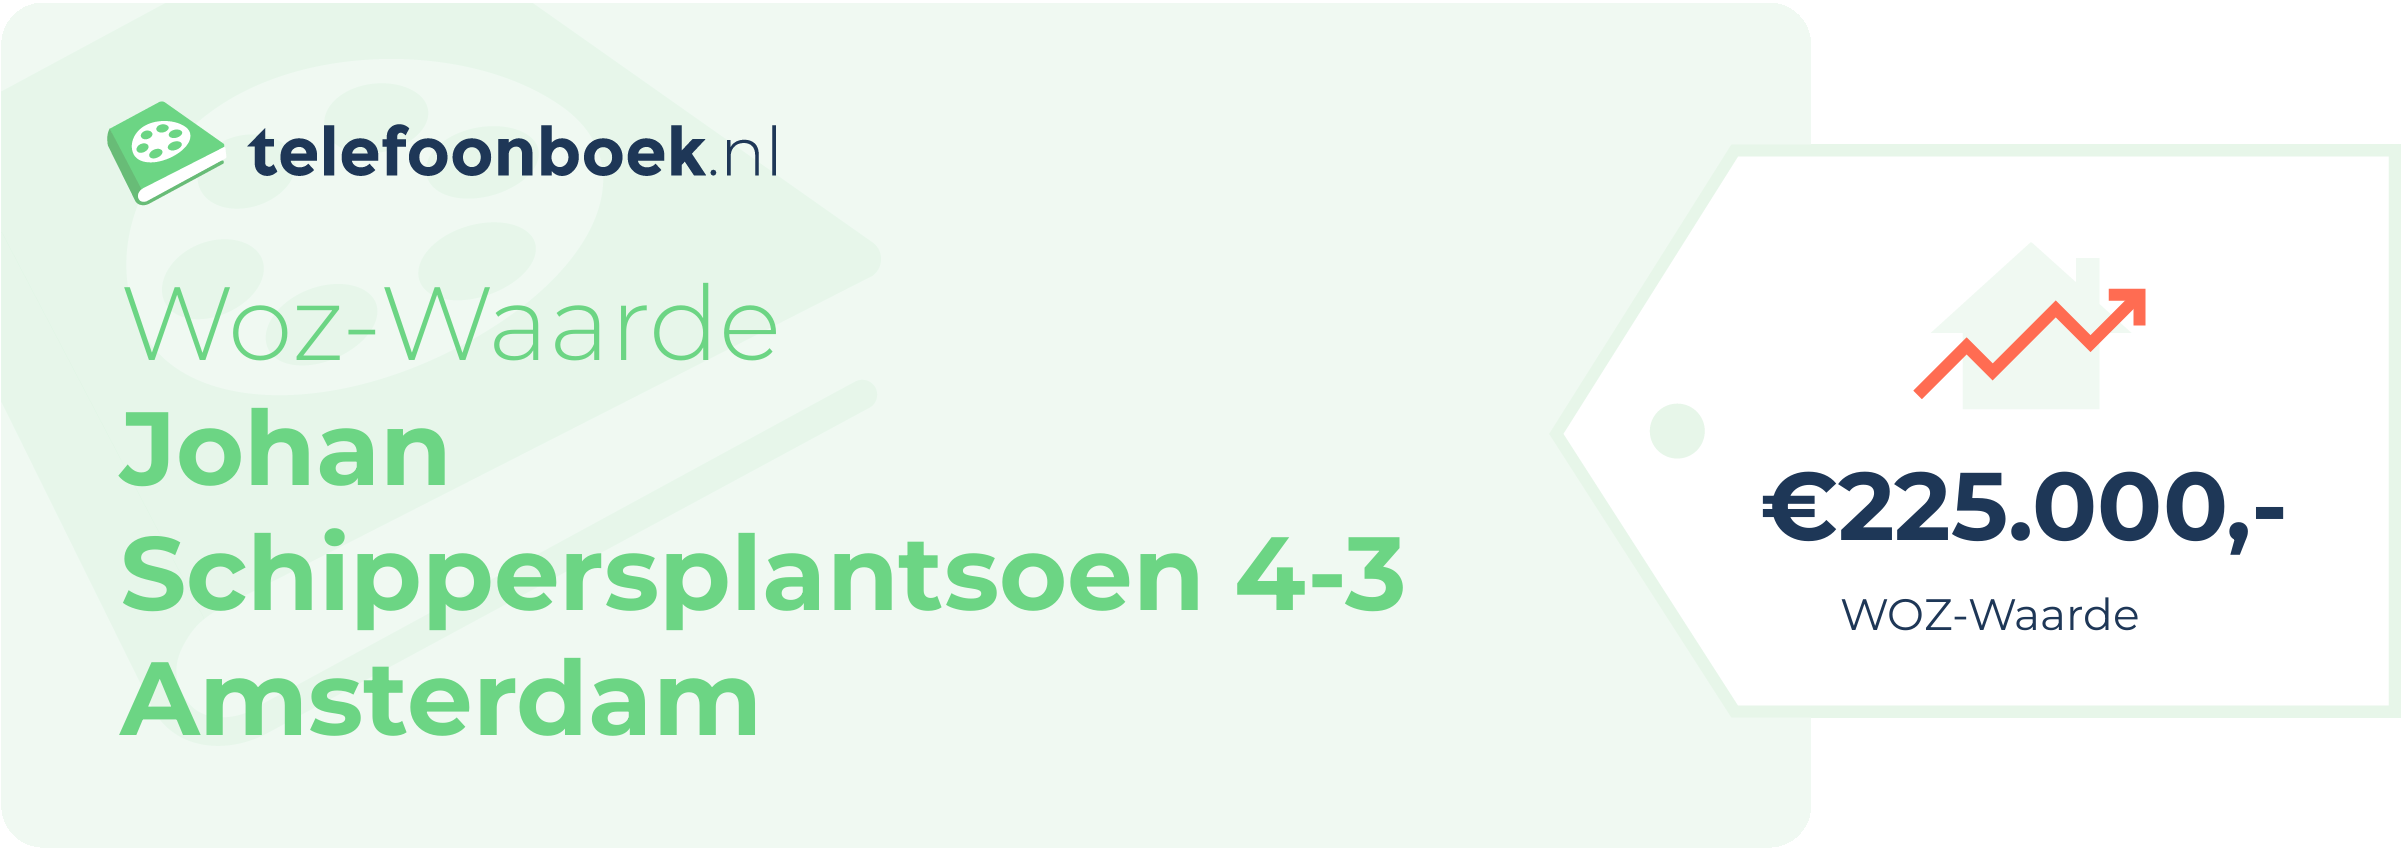 WOZ-waarde Johan Schippersplantsoen 4-3 Amsterdam